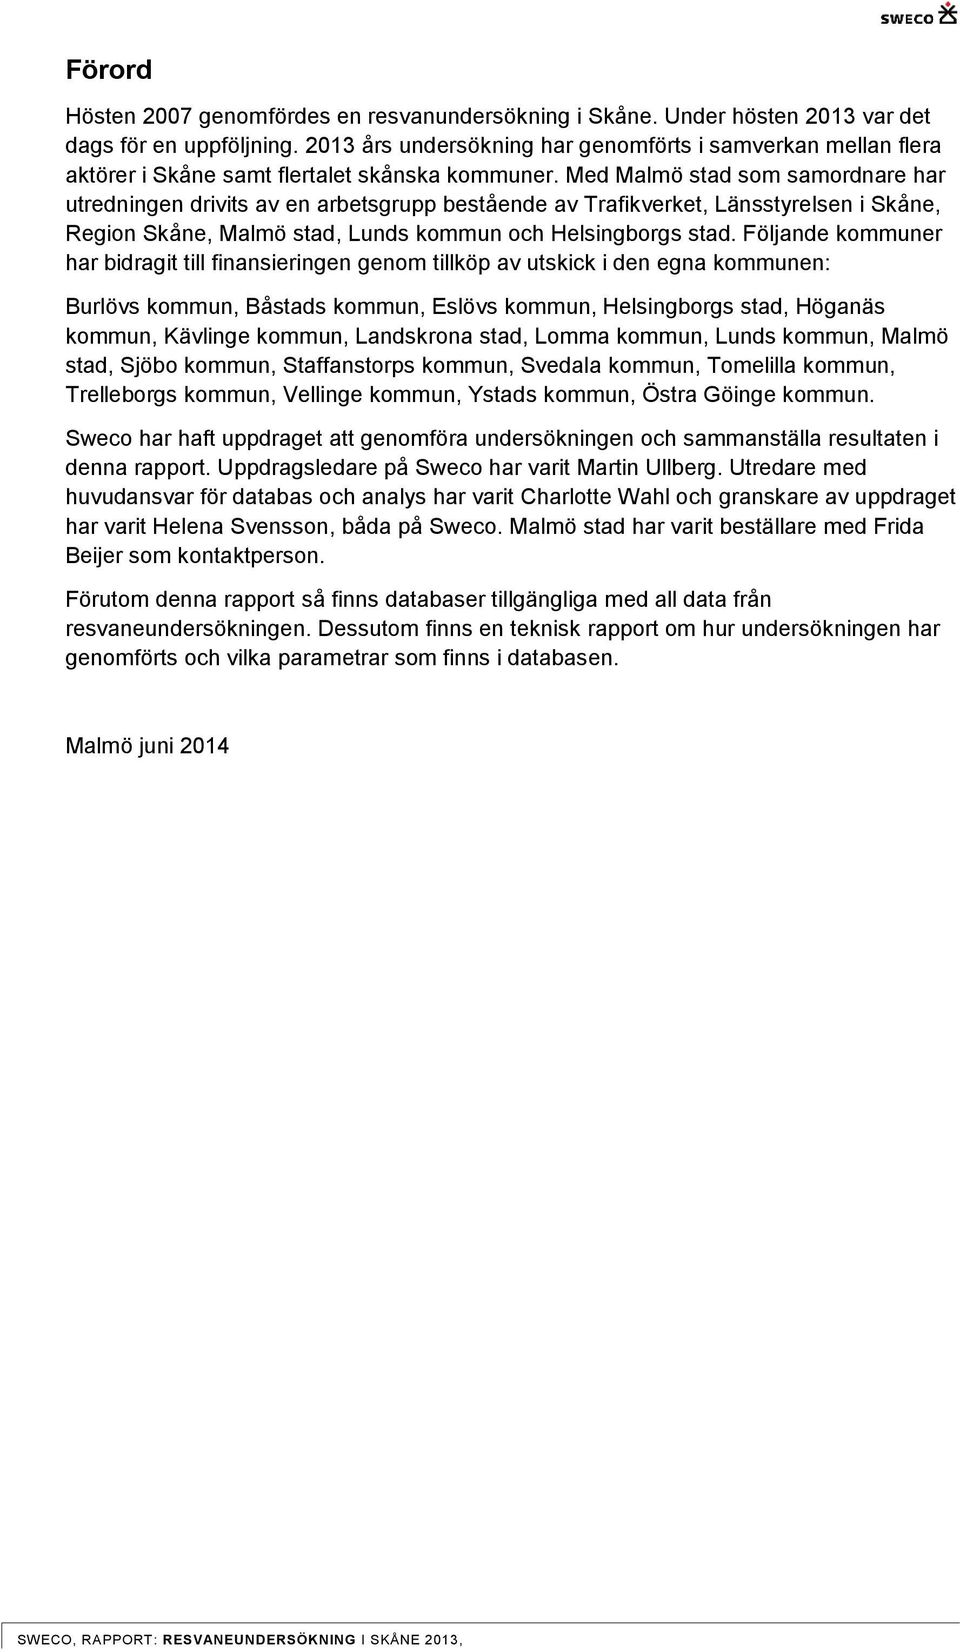 Med Malmö stad som samordnare har utredningen drivits av en arbetsgrupp bestående av Trafikverket, Länsstyrelsen i Skåne, Region Skåne, Malmö stad, Lunds kommun och Helsingborgs stad.